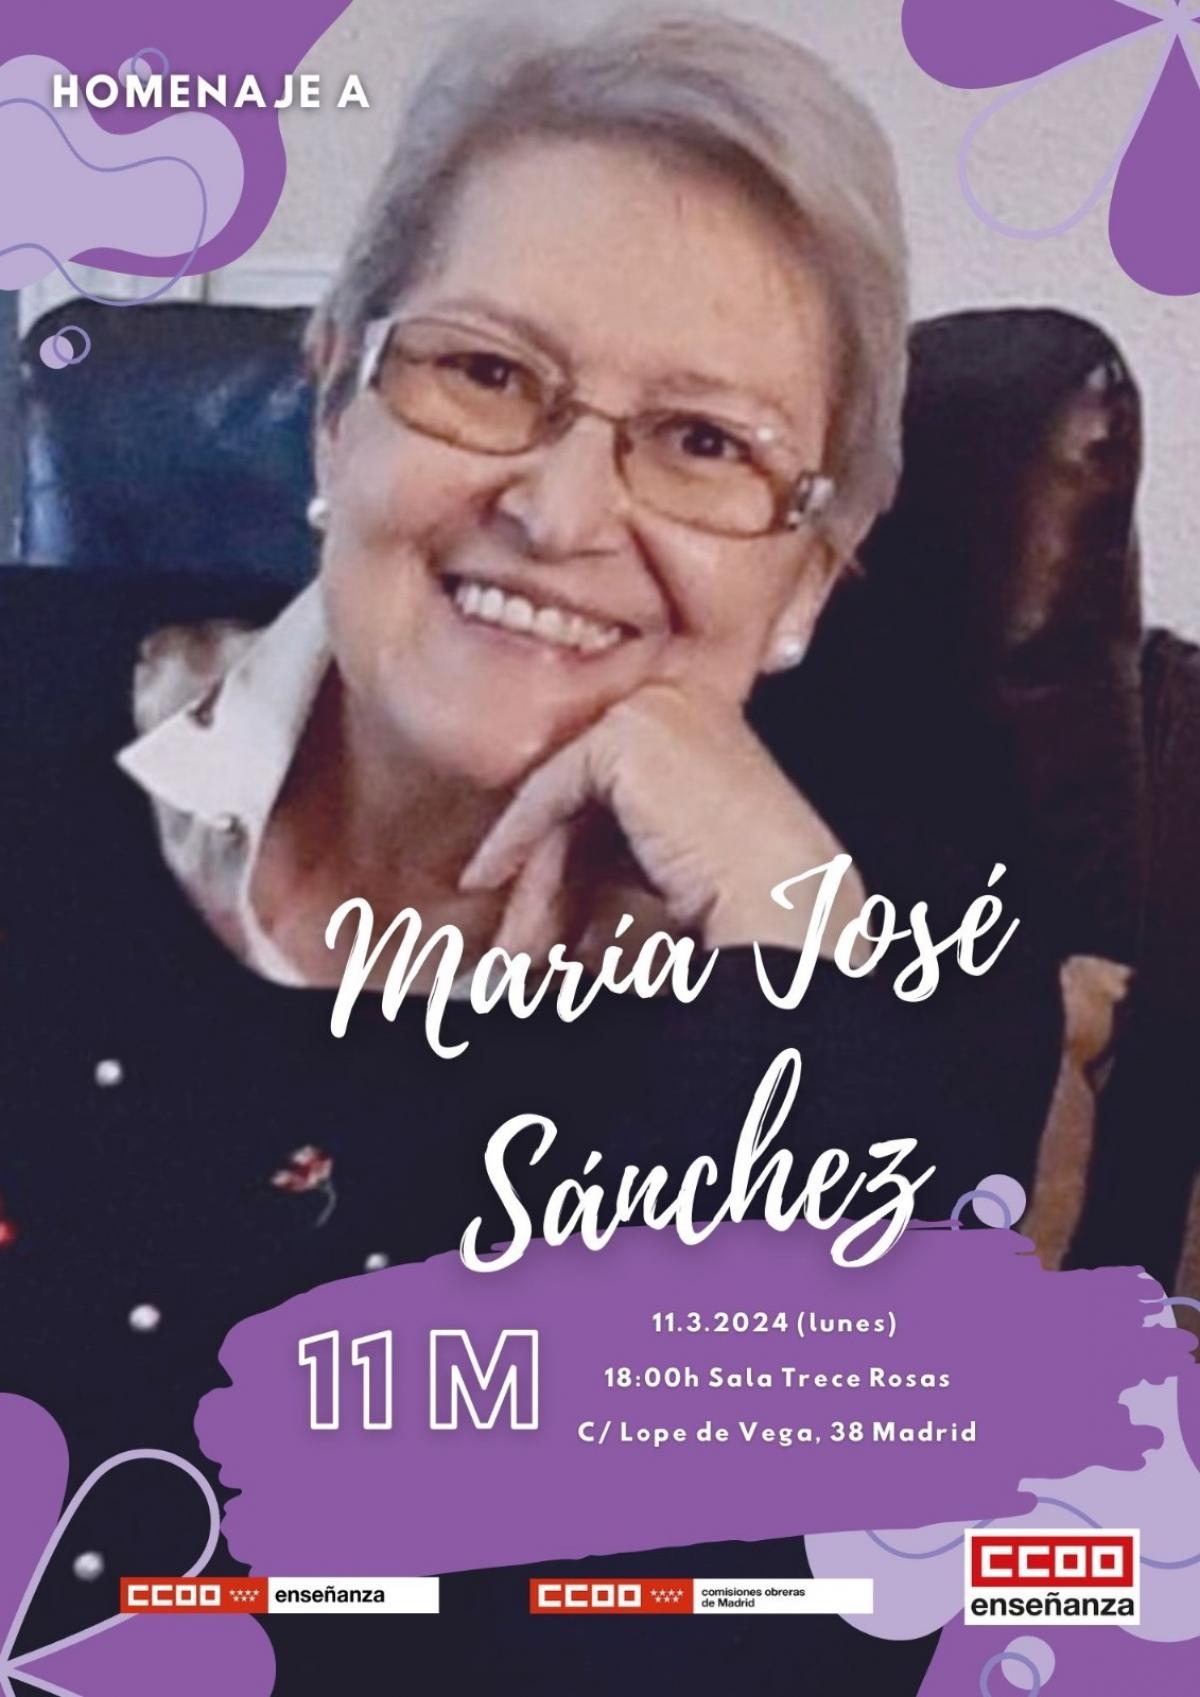 Homenaje a María José Sánchez